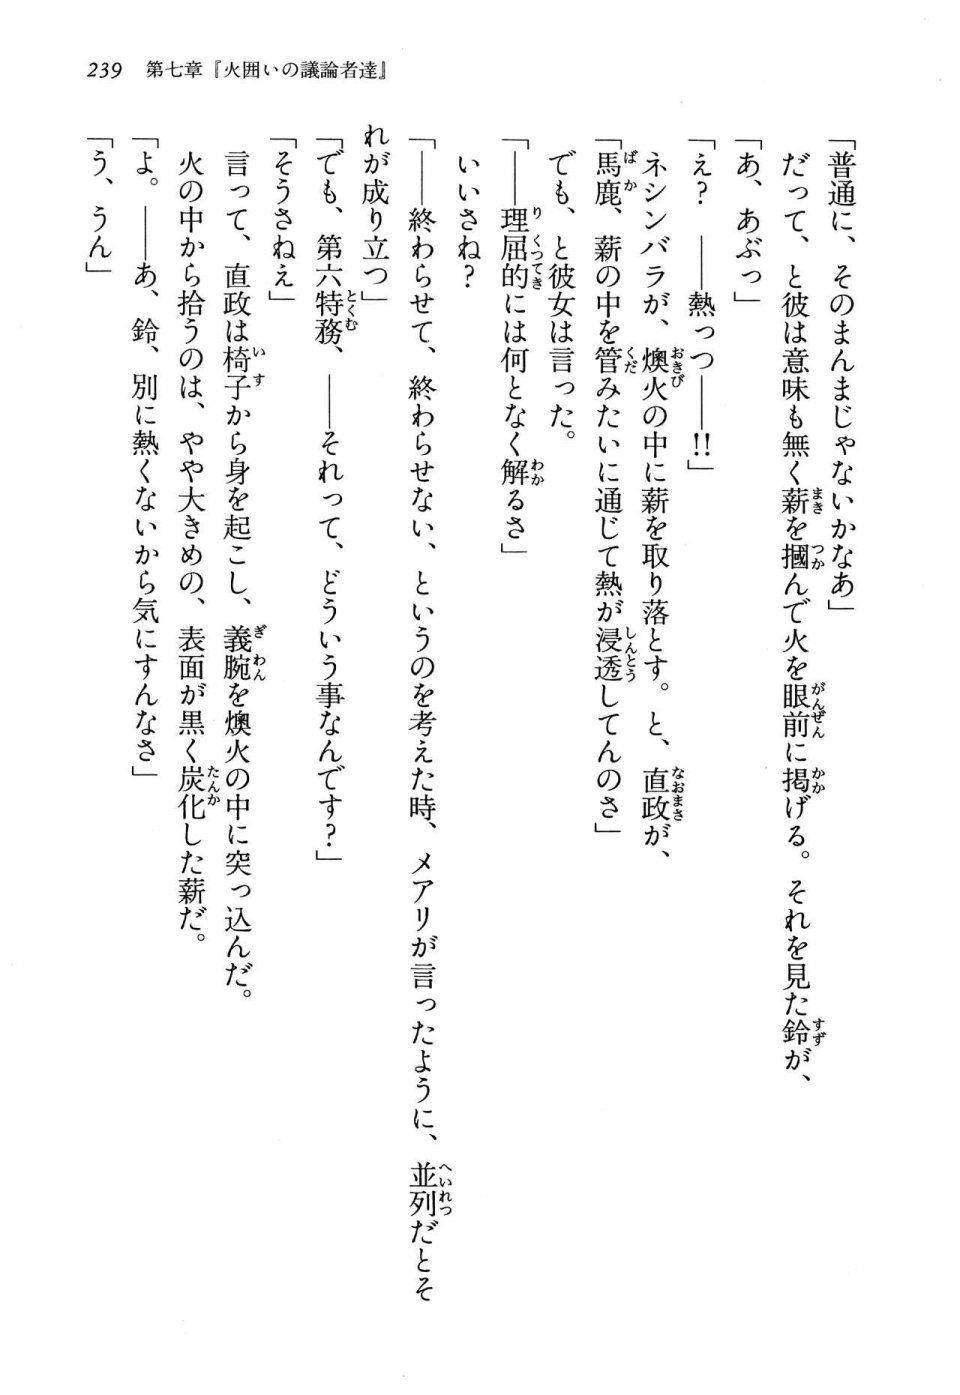 Kyoukai Senjou no Horizon LN Vol 13(6A) - Photo #239